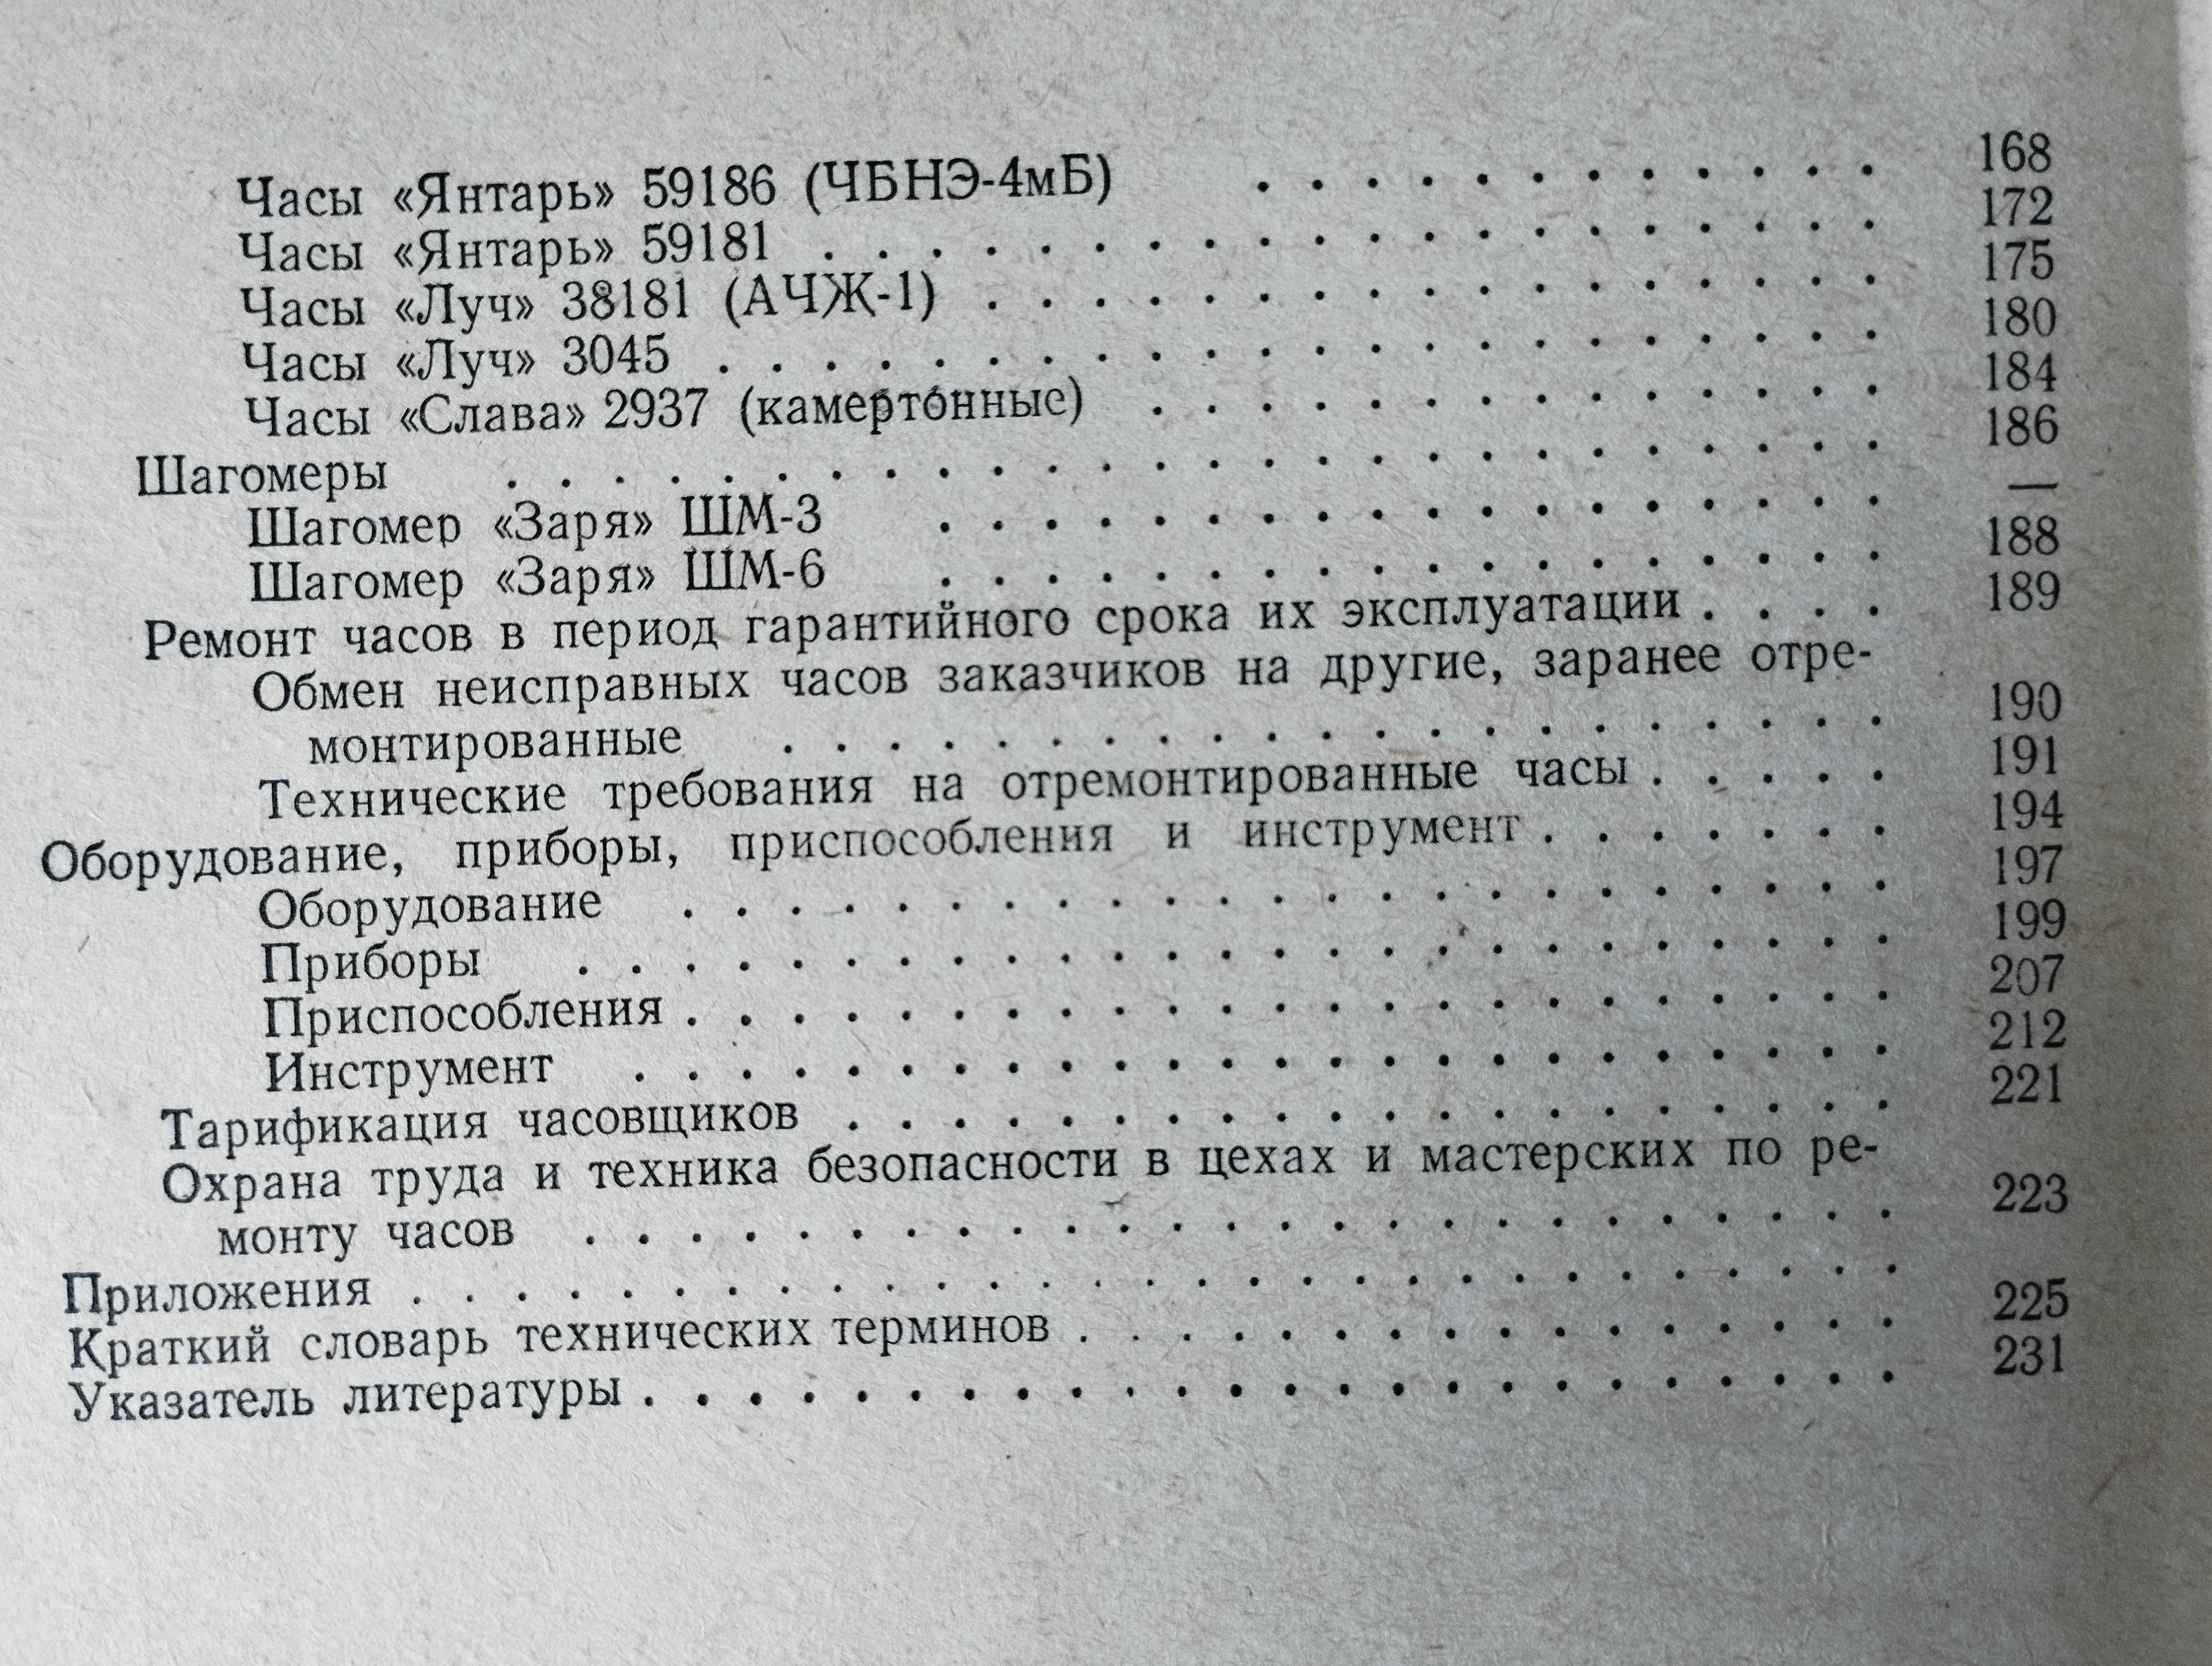 Справочная книга по ремонту часов. Харитончук. 1977 г.